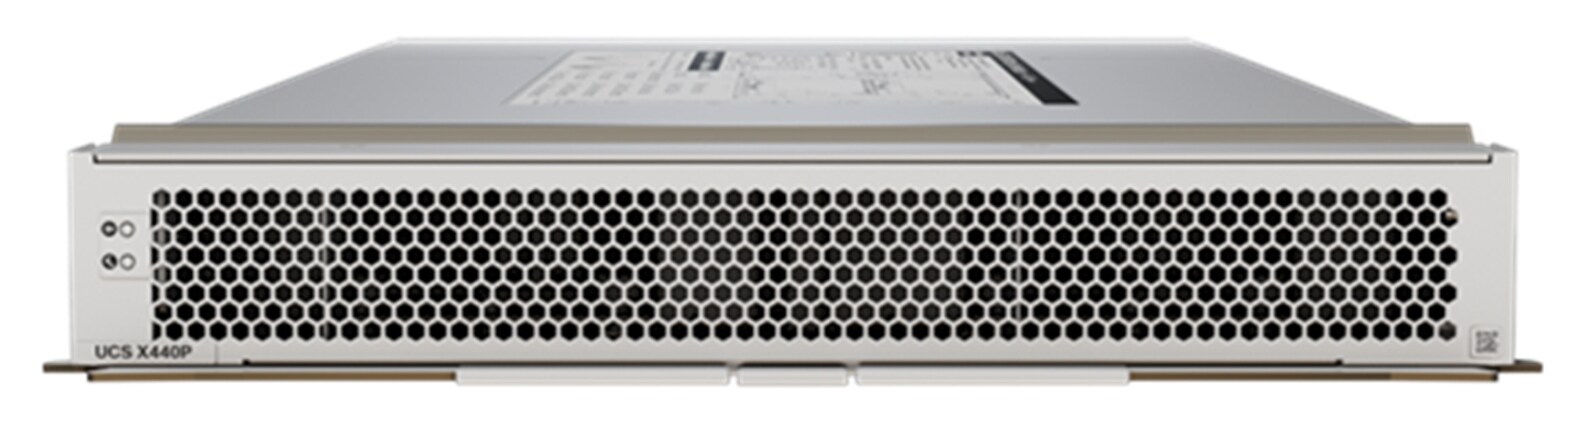 Cisco UCS X440p PCle Node for A100,A16,A40,T4 GPU